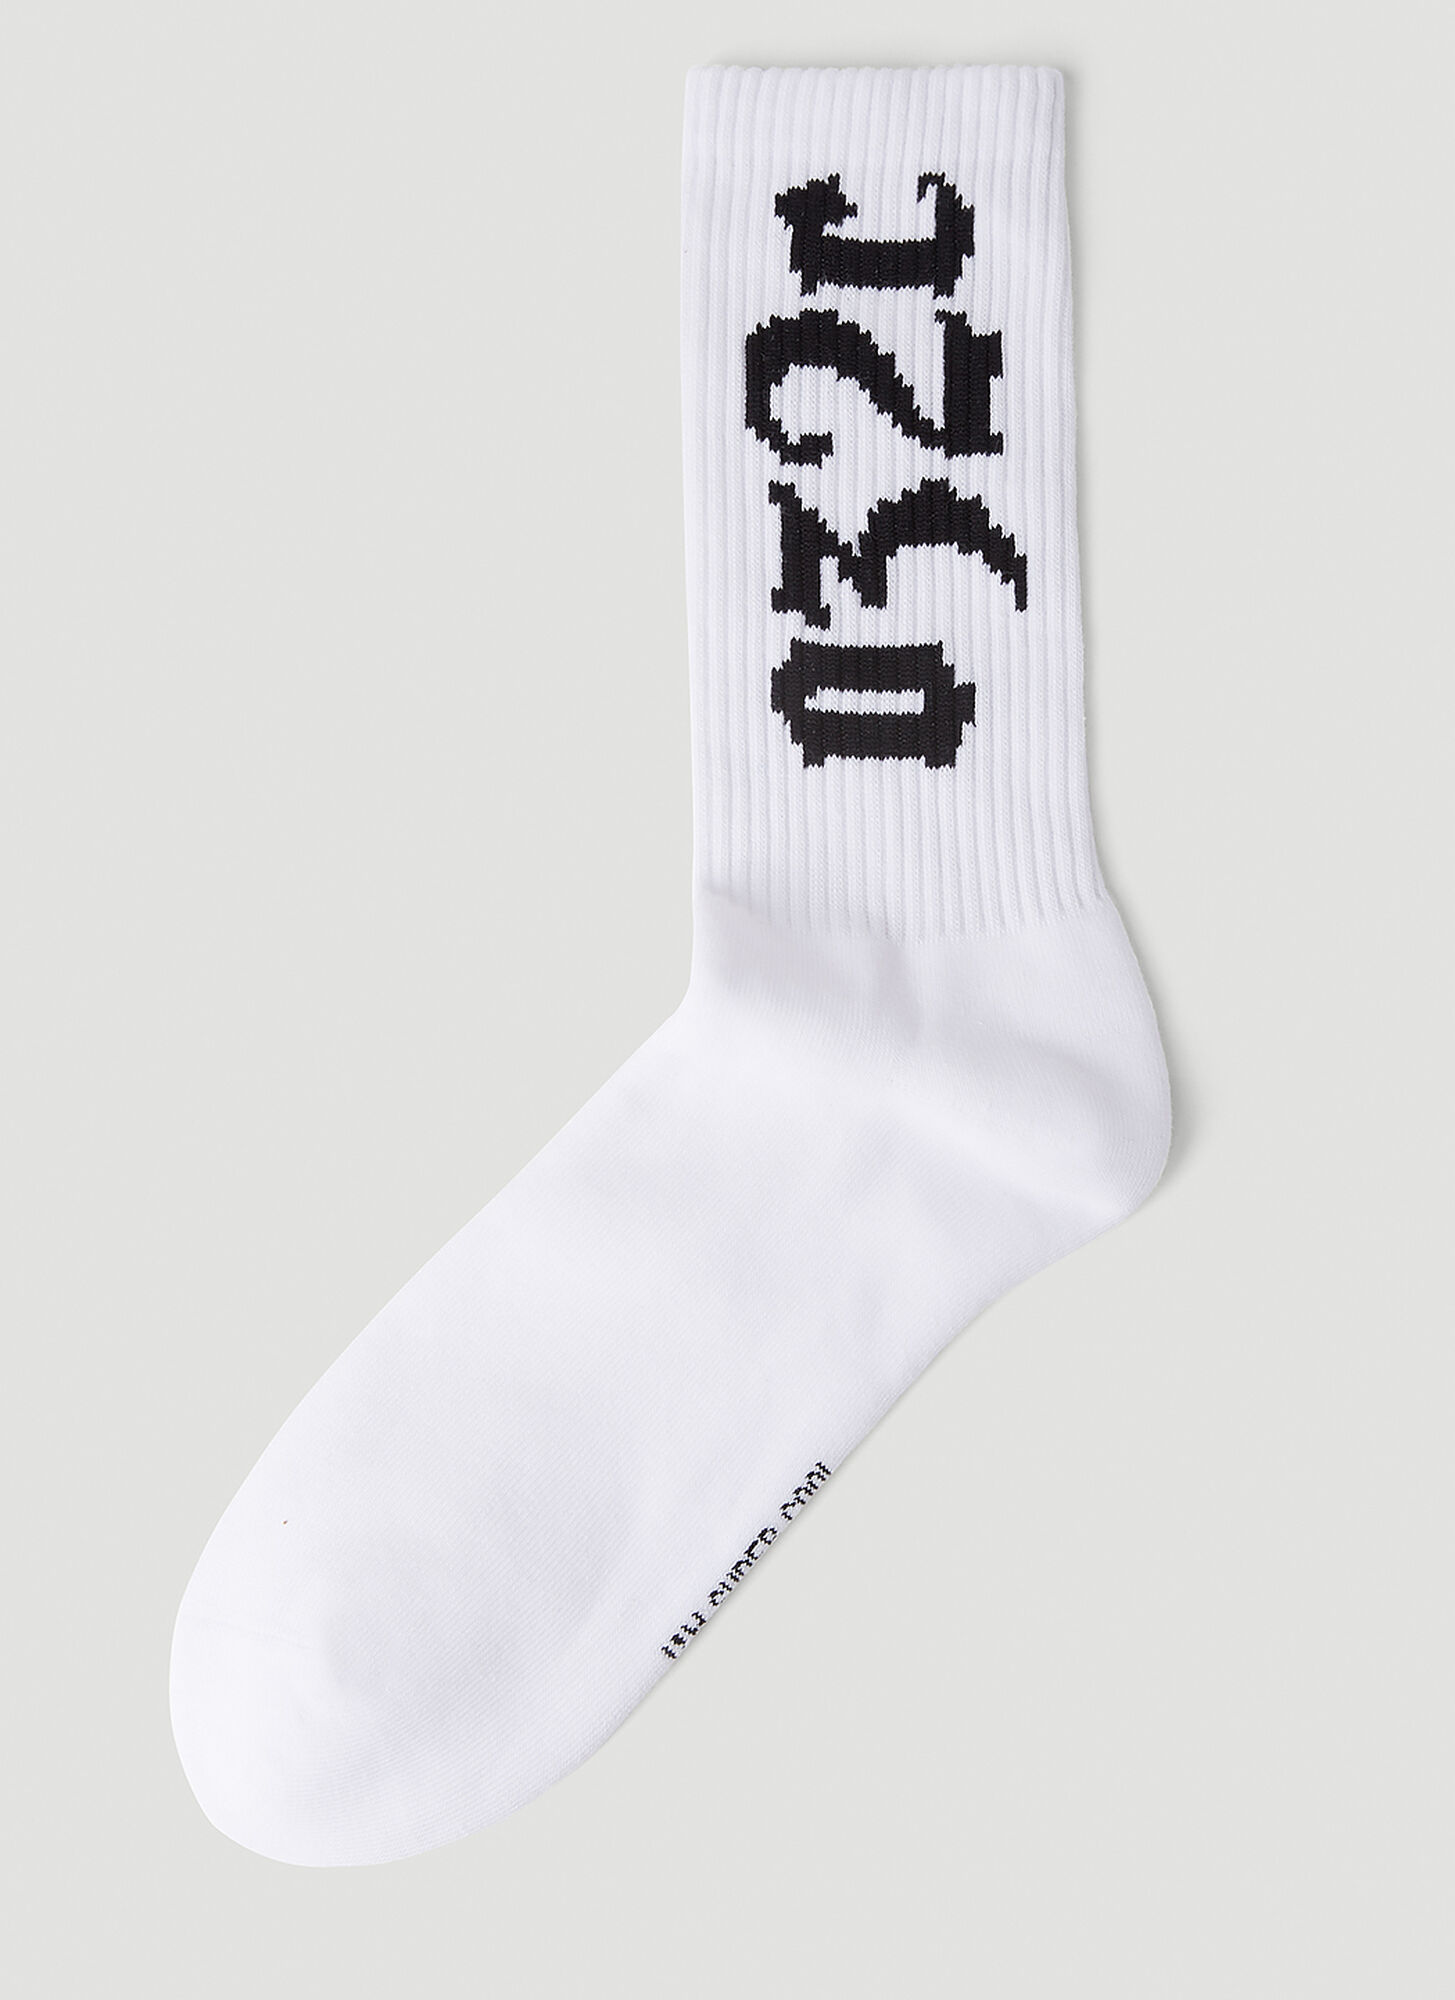 032c Cry Socks In White